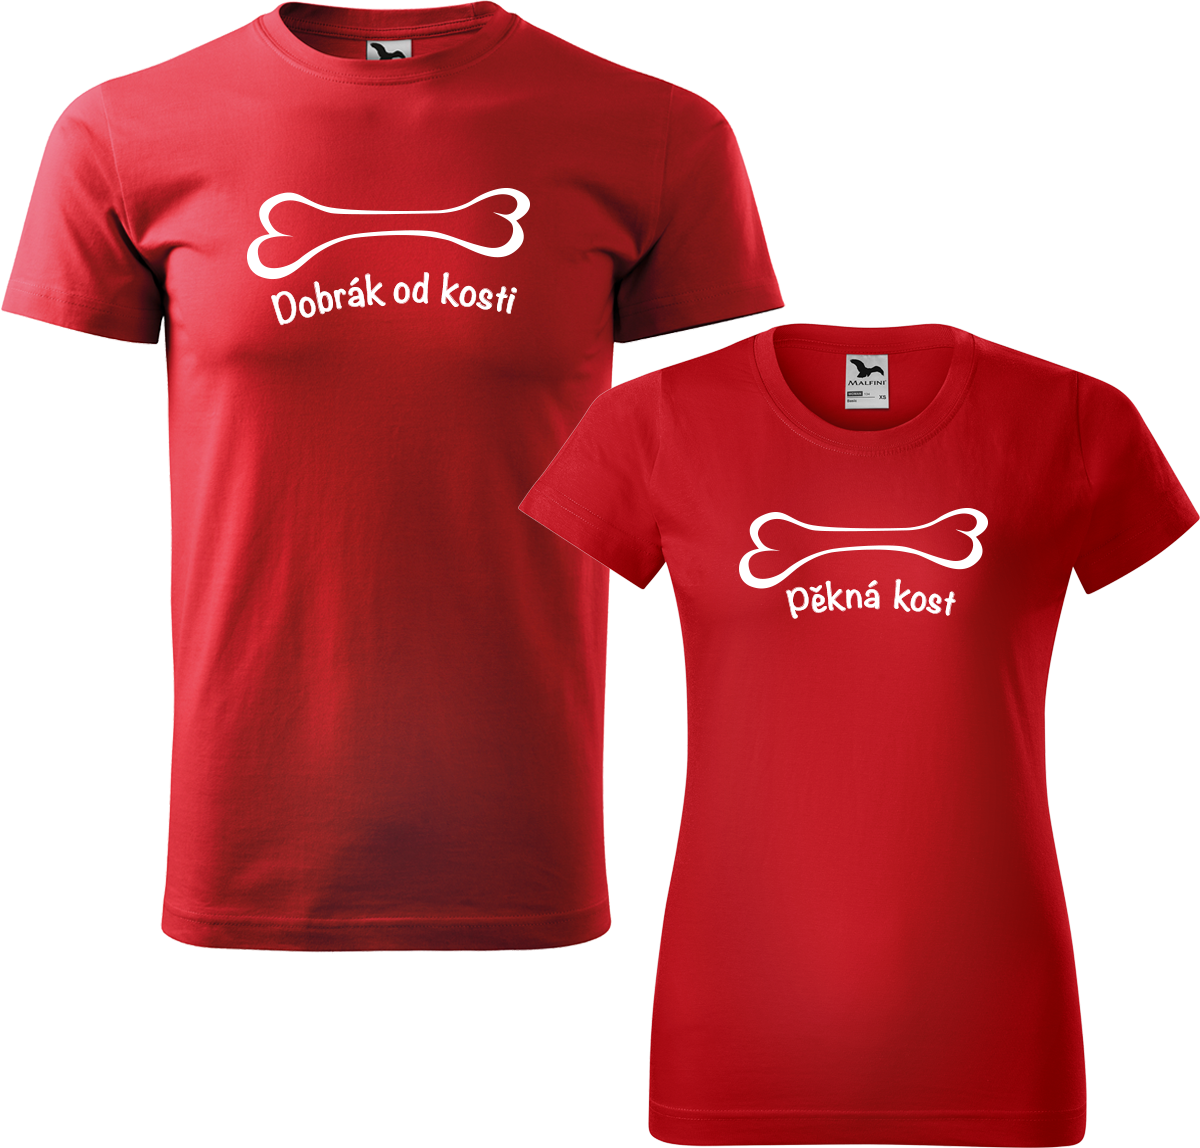 Trička pro páry - Dobrák od kosti a pěkná kost Barva: Červená (07), Velikost dámské tričko: XL, Velikost pánské tričko: XL